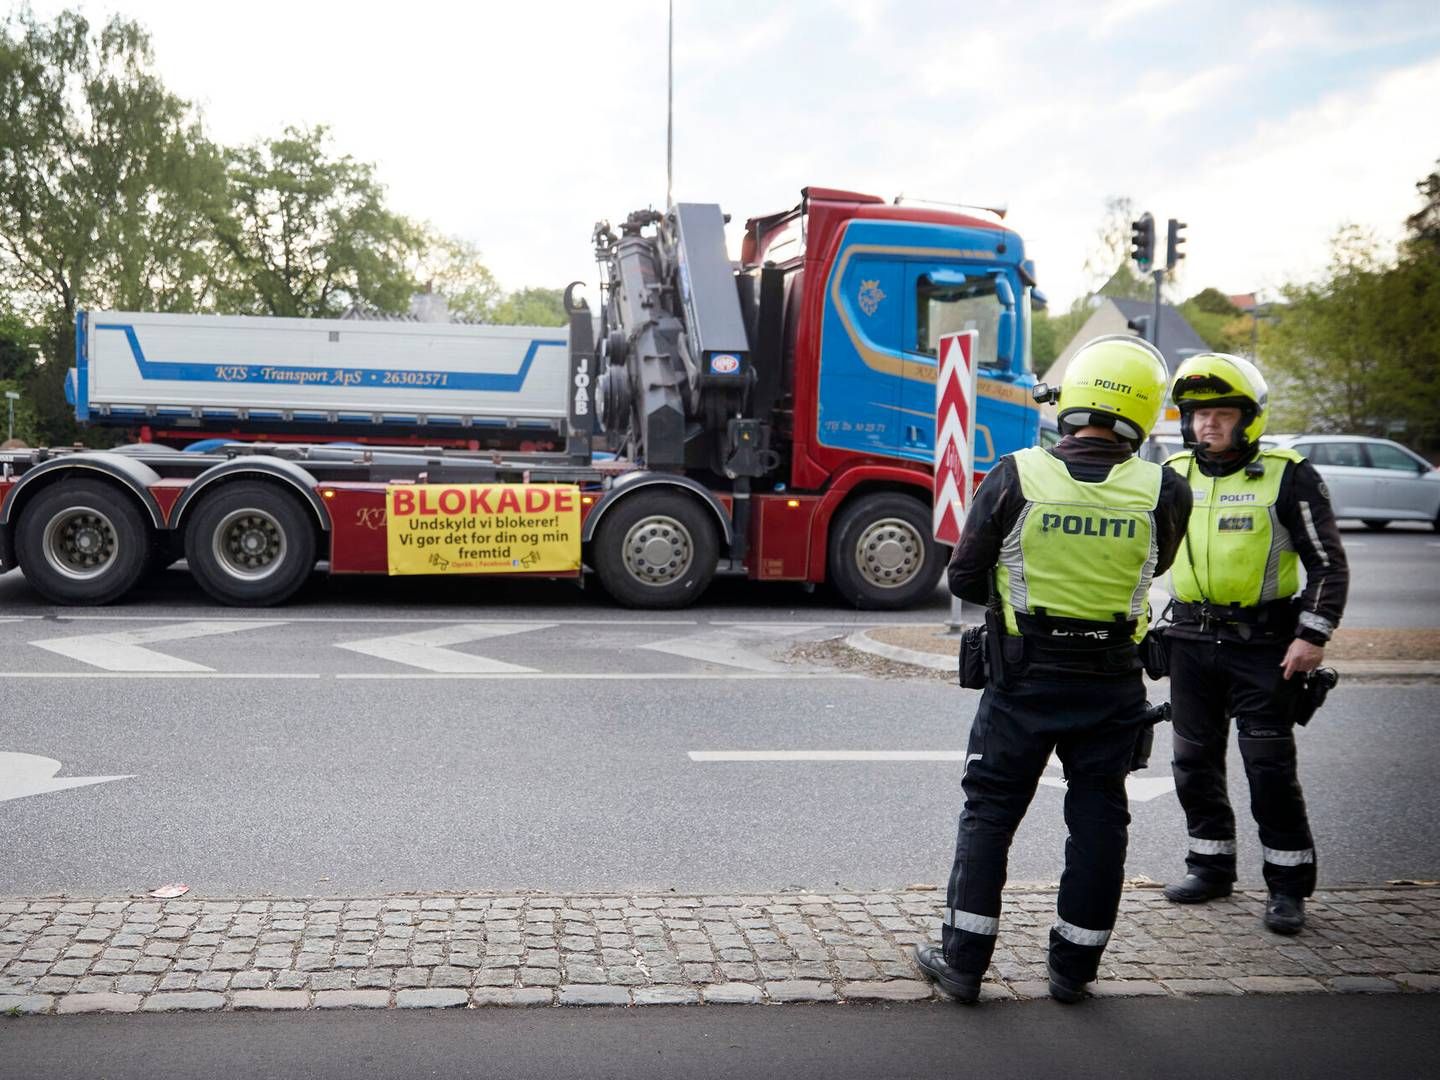 Politiet uddelte i forbindelse med lastbilblokaden bøder til chauffører på 2500 kr., hvis de standsede eller generede trafikken. | Foto: Jens Dresling/Ritzau Scanpix